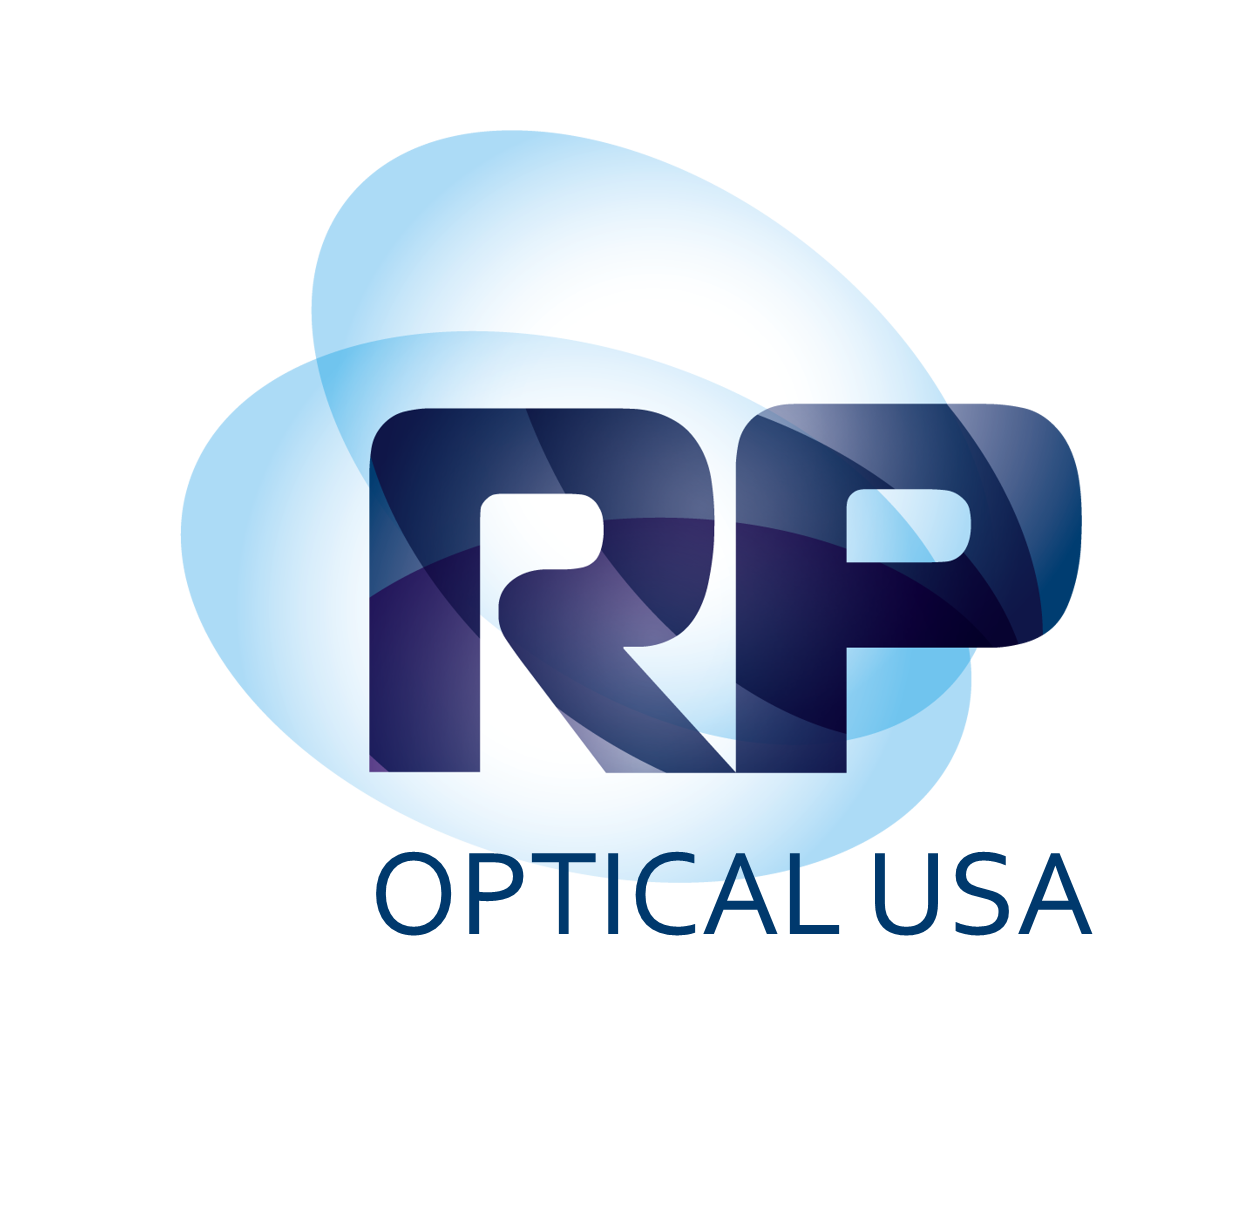 RP Optical USA